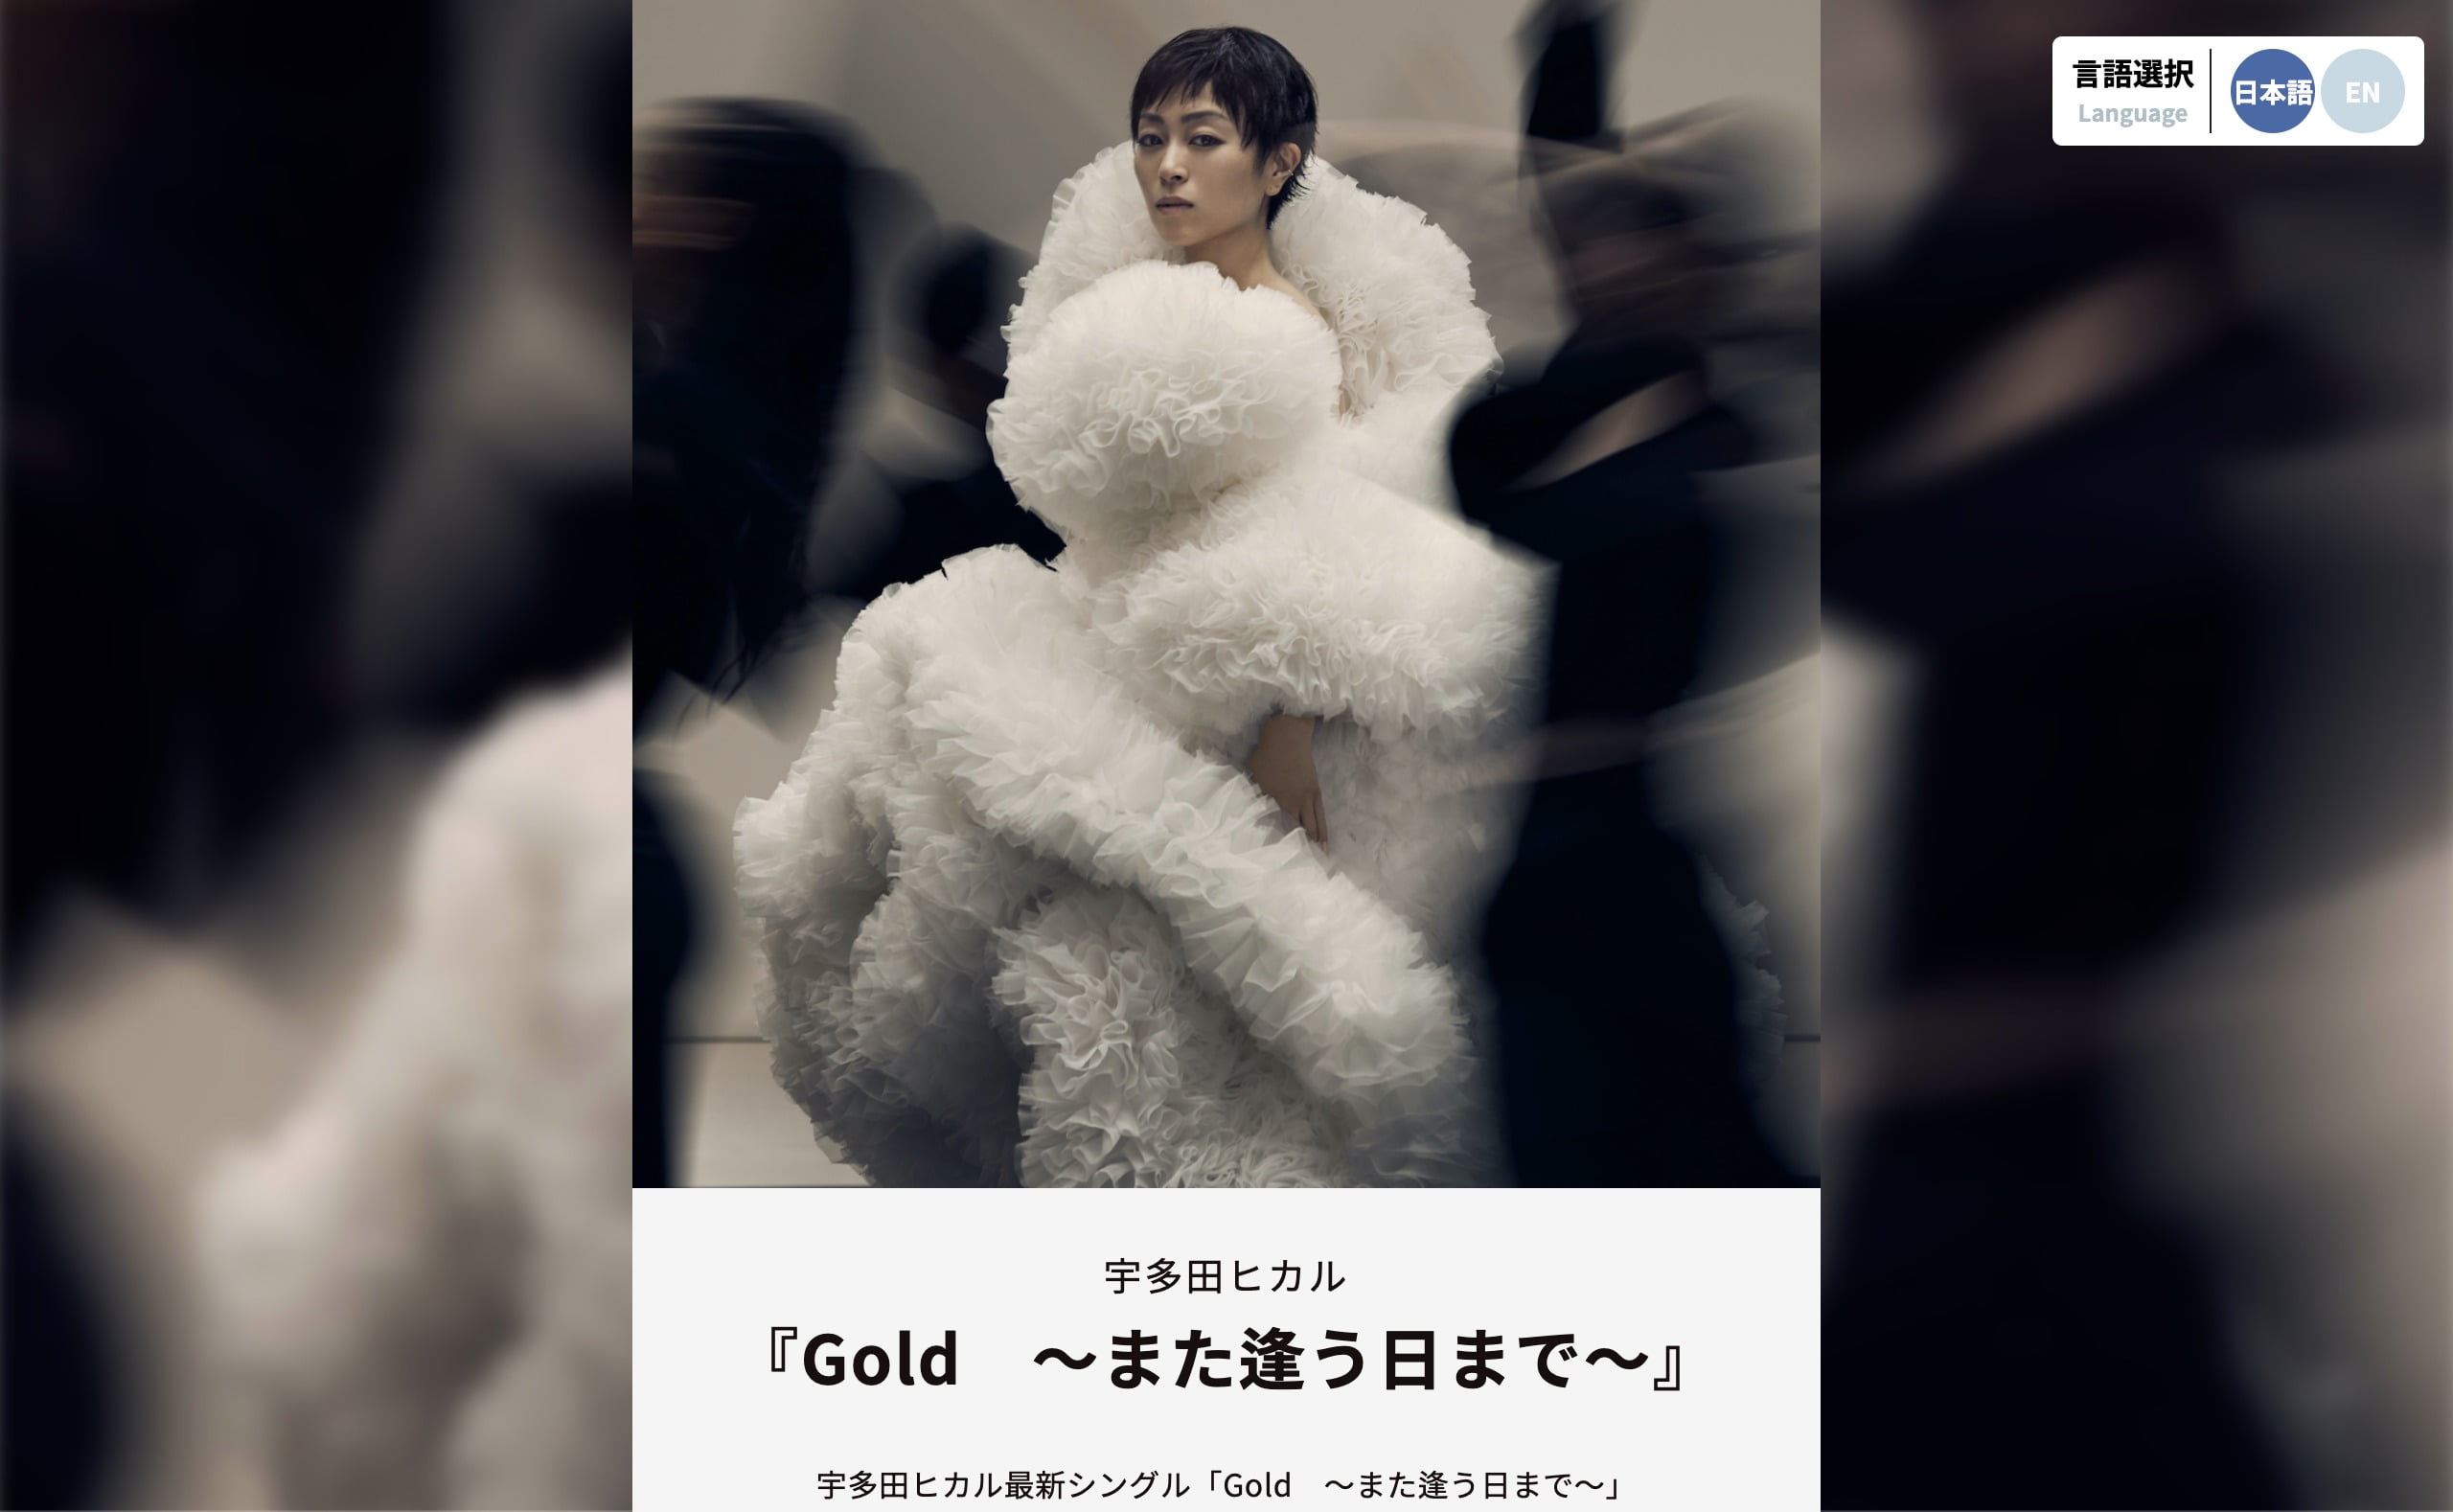 宇多田ヒカル「Gold ～また逢う日まで～」(映画『キングダム 運命の炎